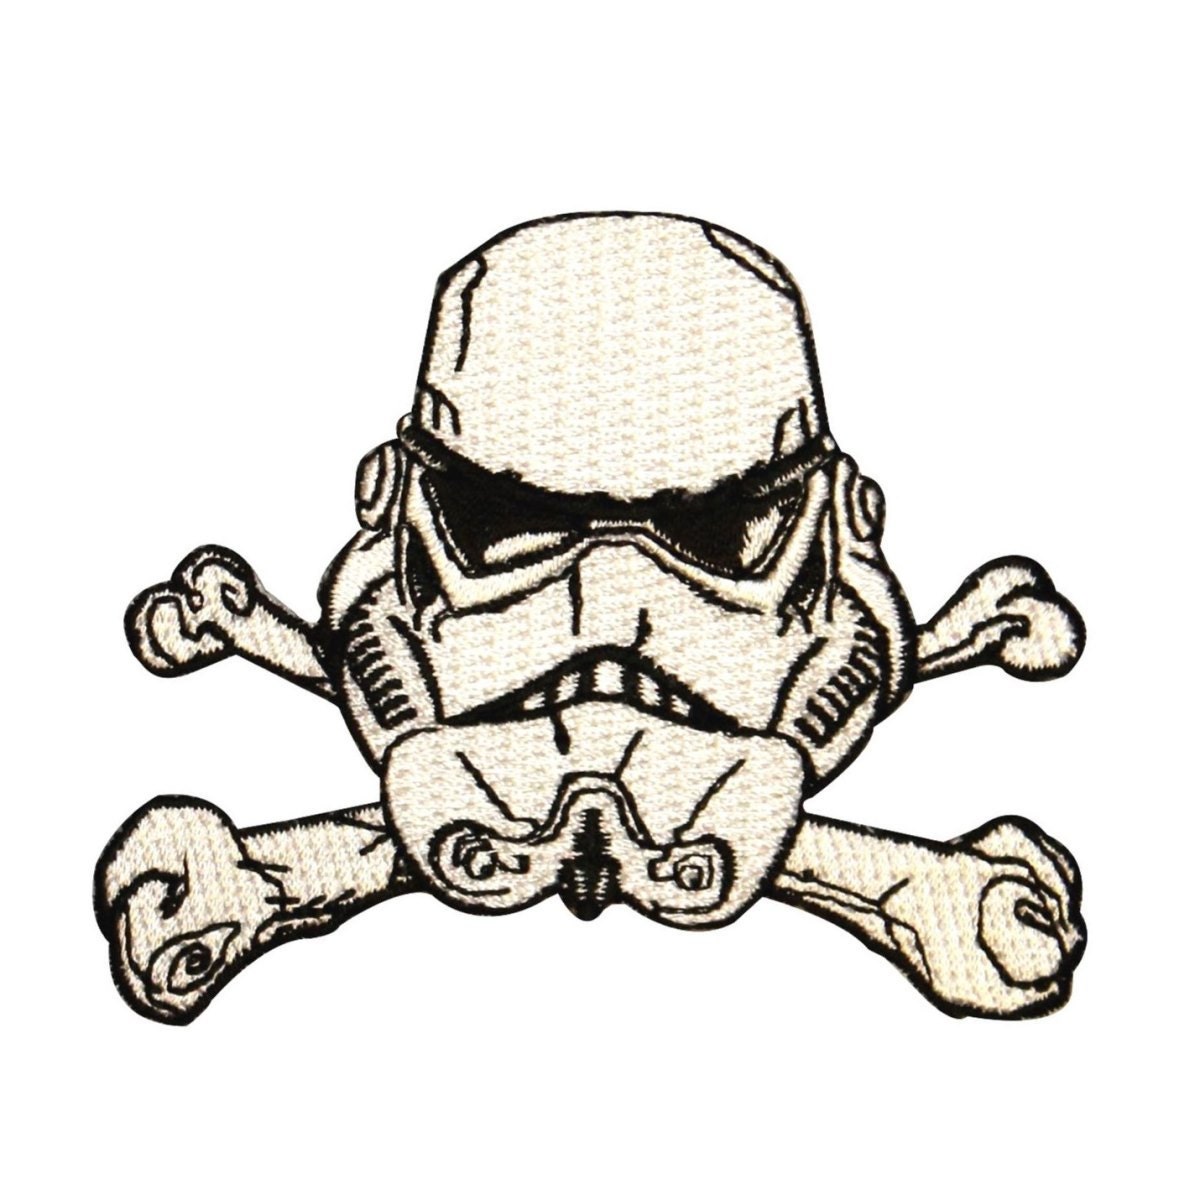 Stormtrooper Star Wars Helm Helmet Cross Bones Aufnäher Patch Abzeichen 